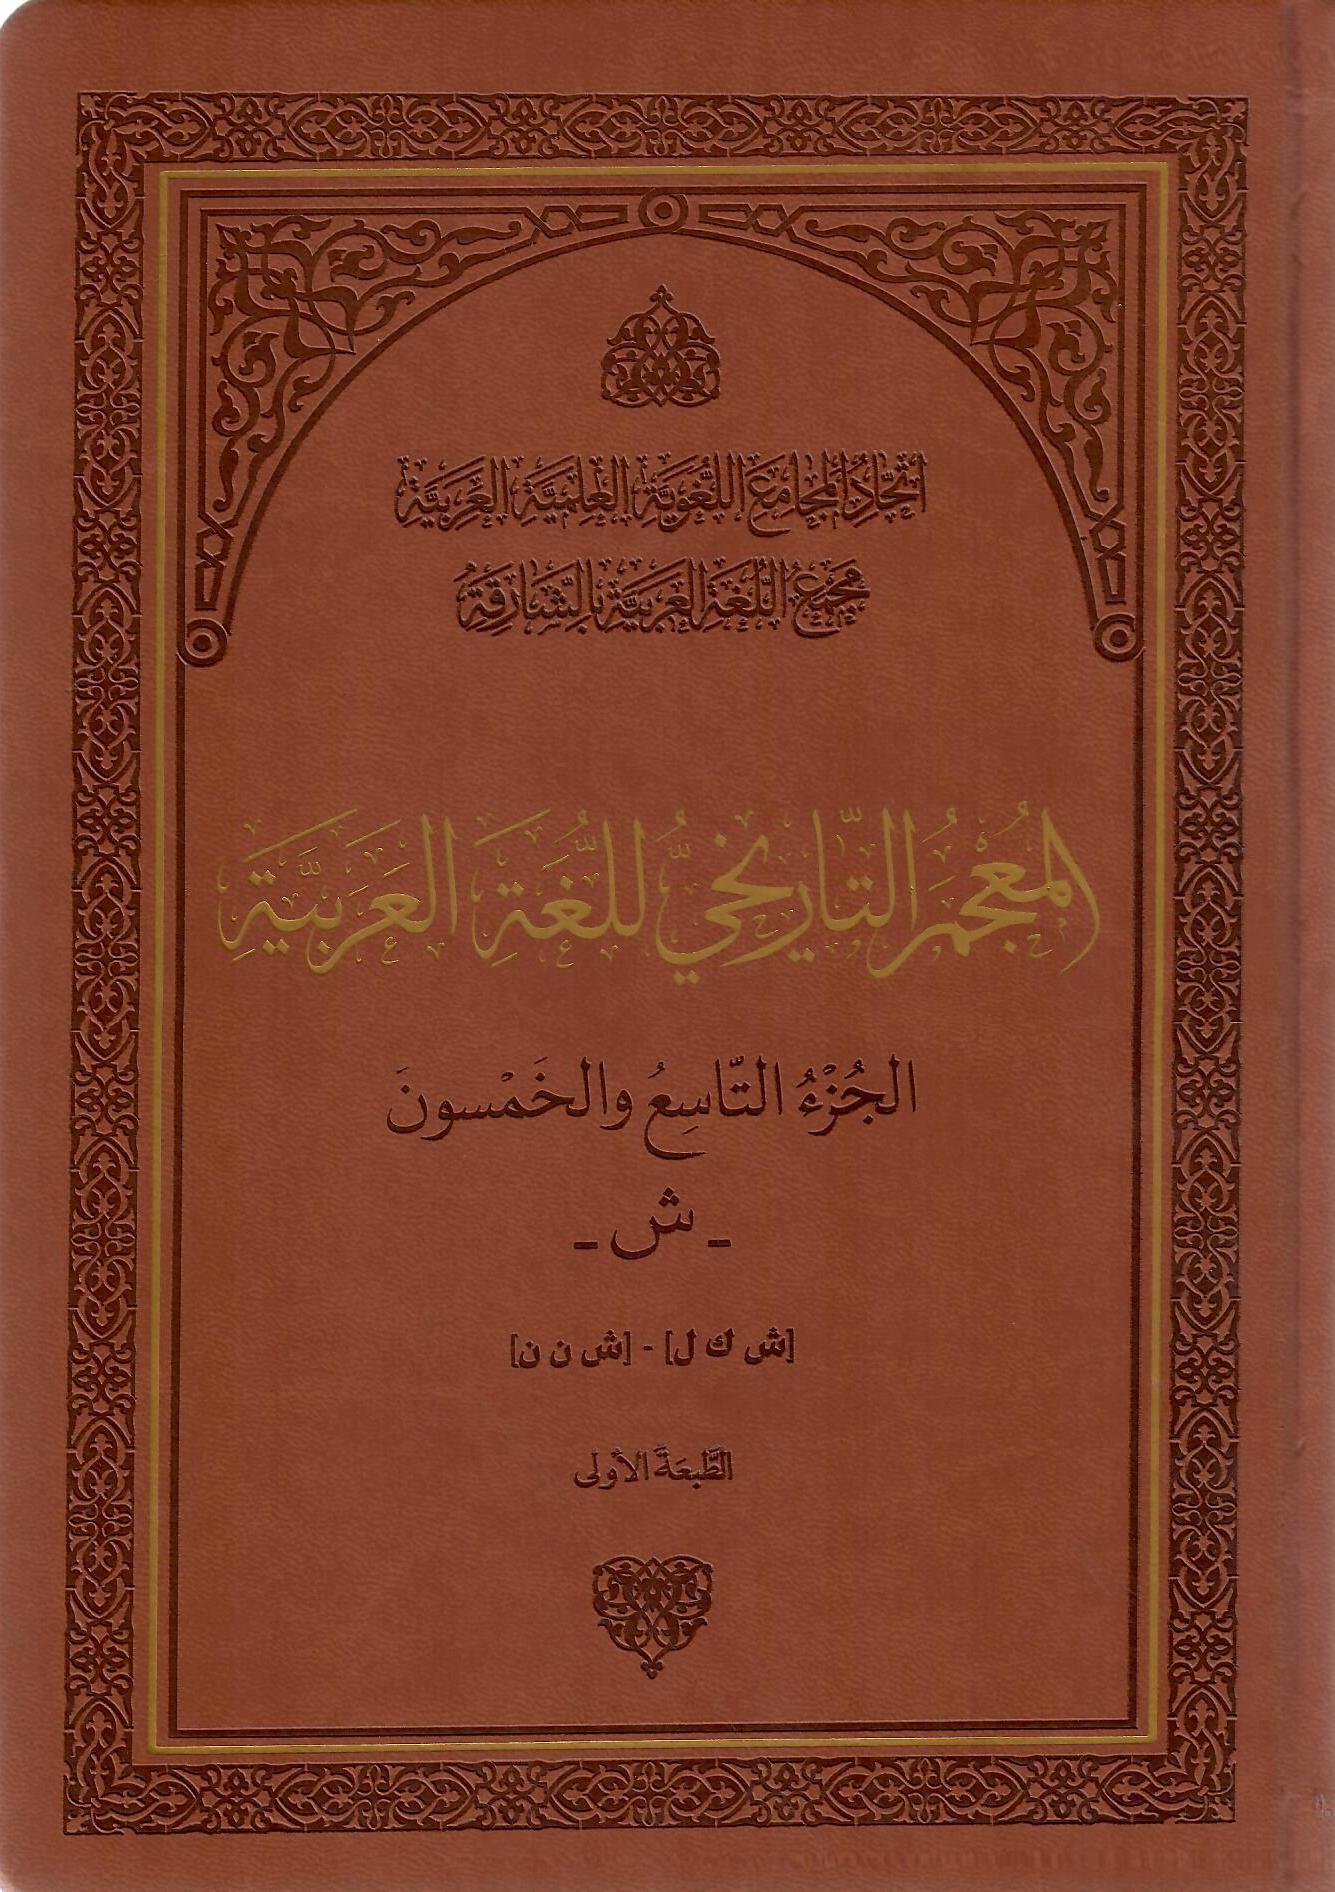 المعجم التاريخي للغة العربية الجزء التاسع والخمسون